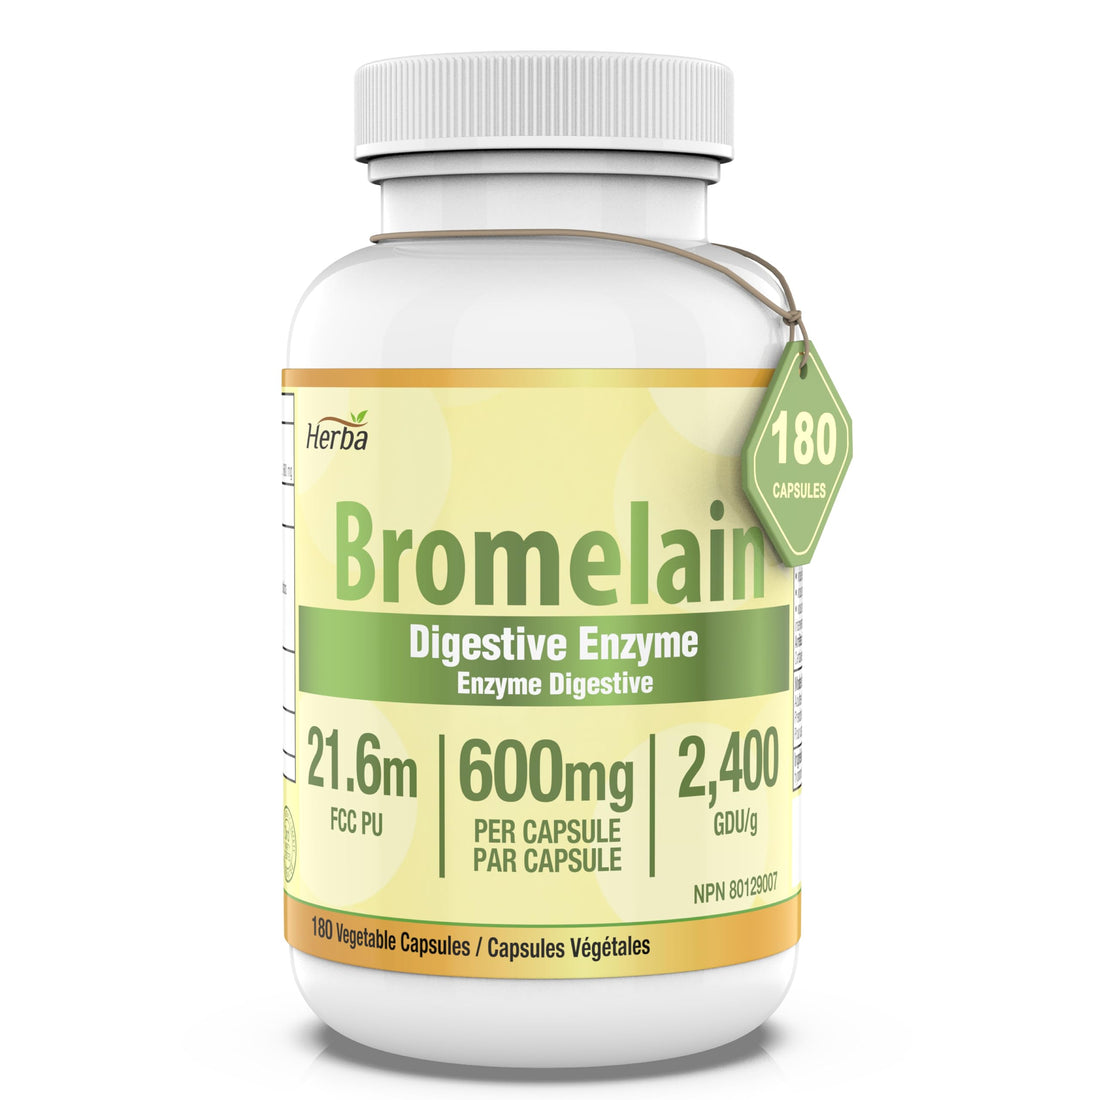 Herba Bromelain Supplement 600mg – 180 Capsules | 2,400 GDU/g Max Potency